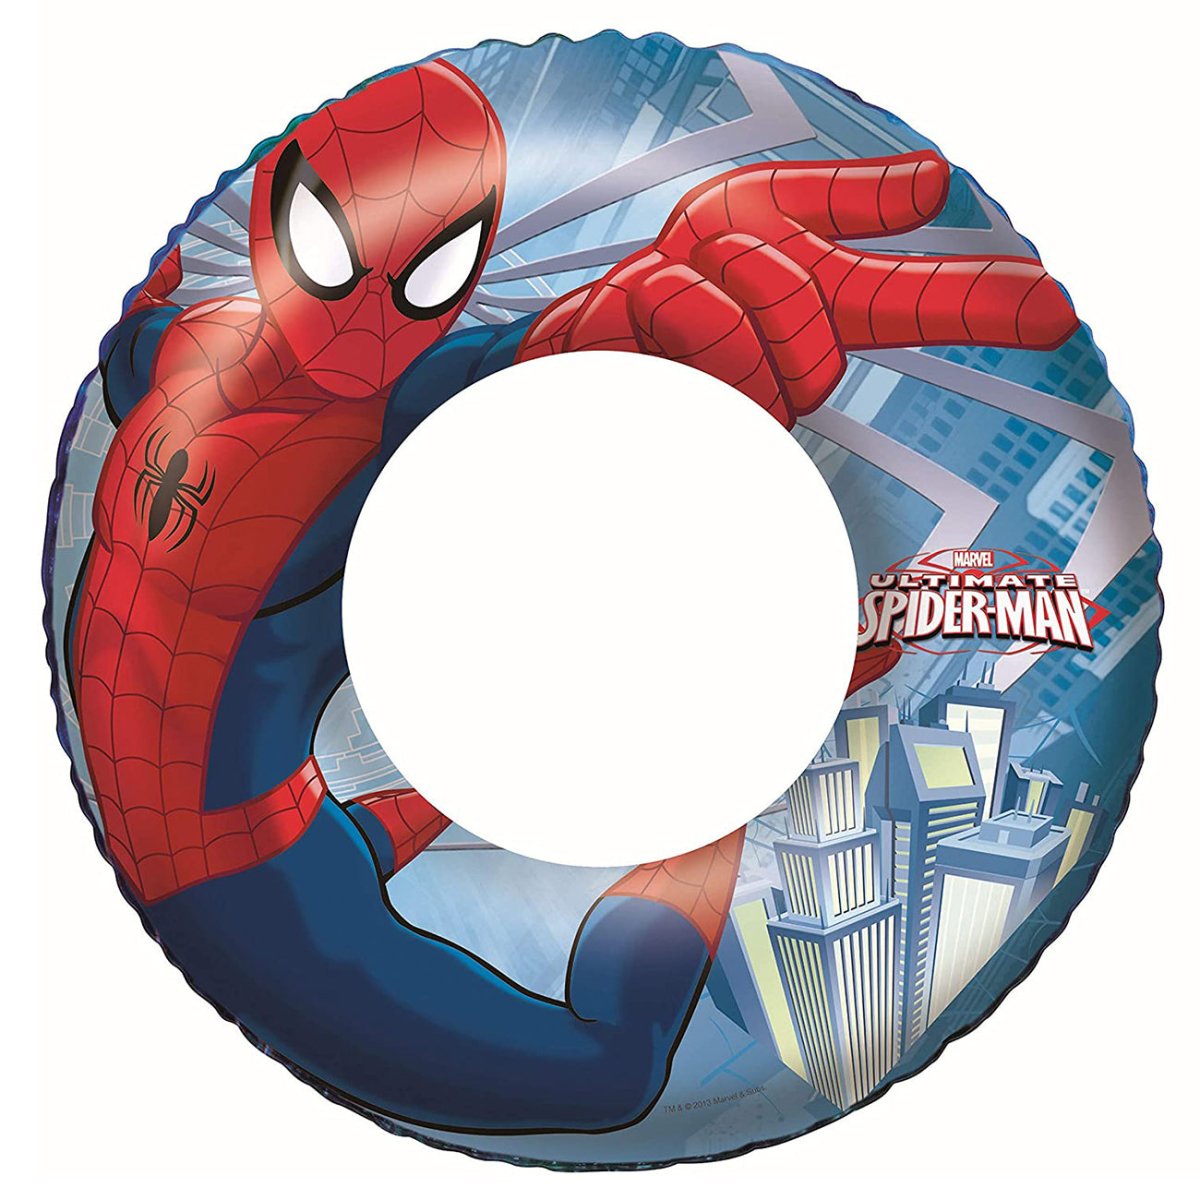 Flotador Hinchable Infantil Spiderman 56 cm - movilcom.com